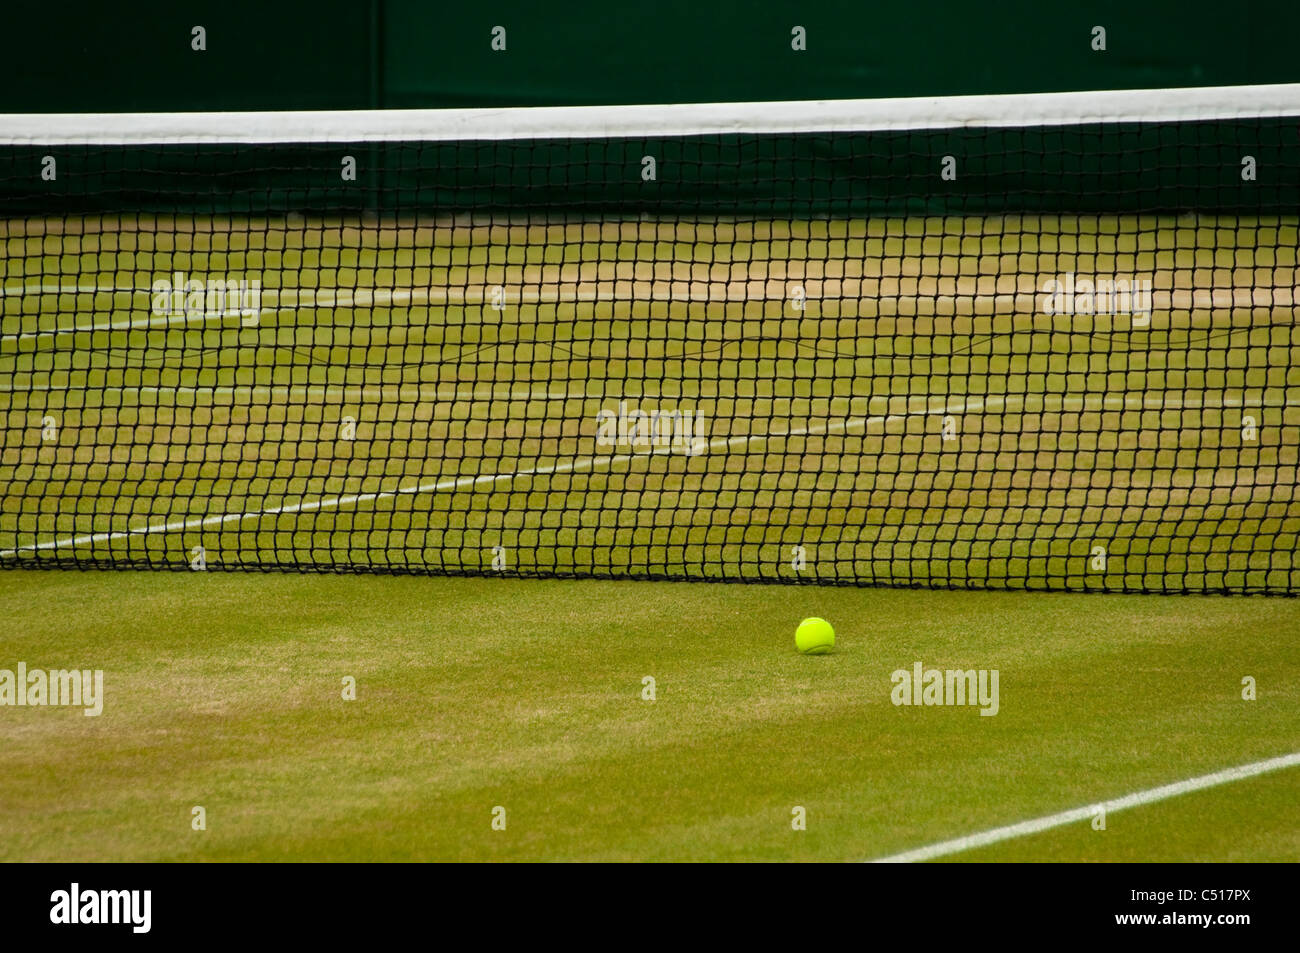 Una cancha de tenis de Wimbledon Foto de stock